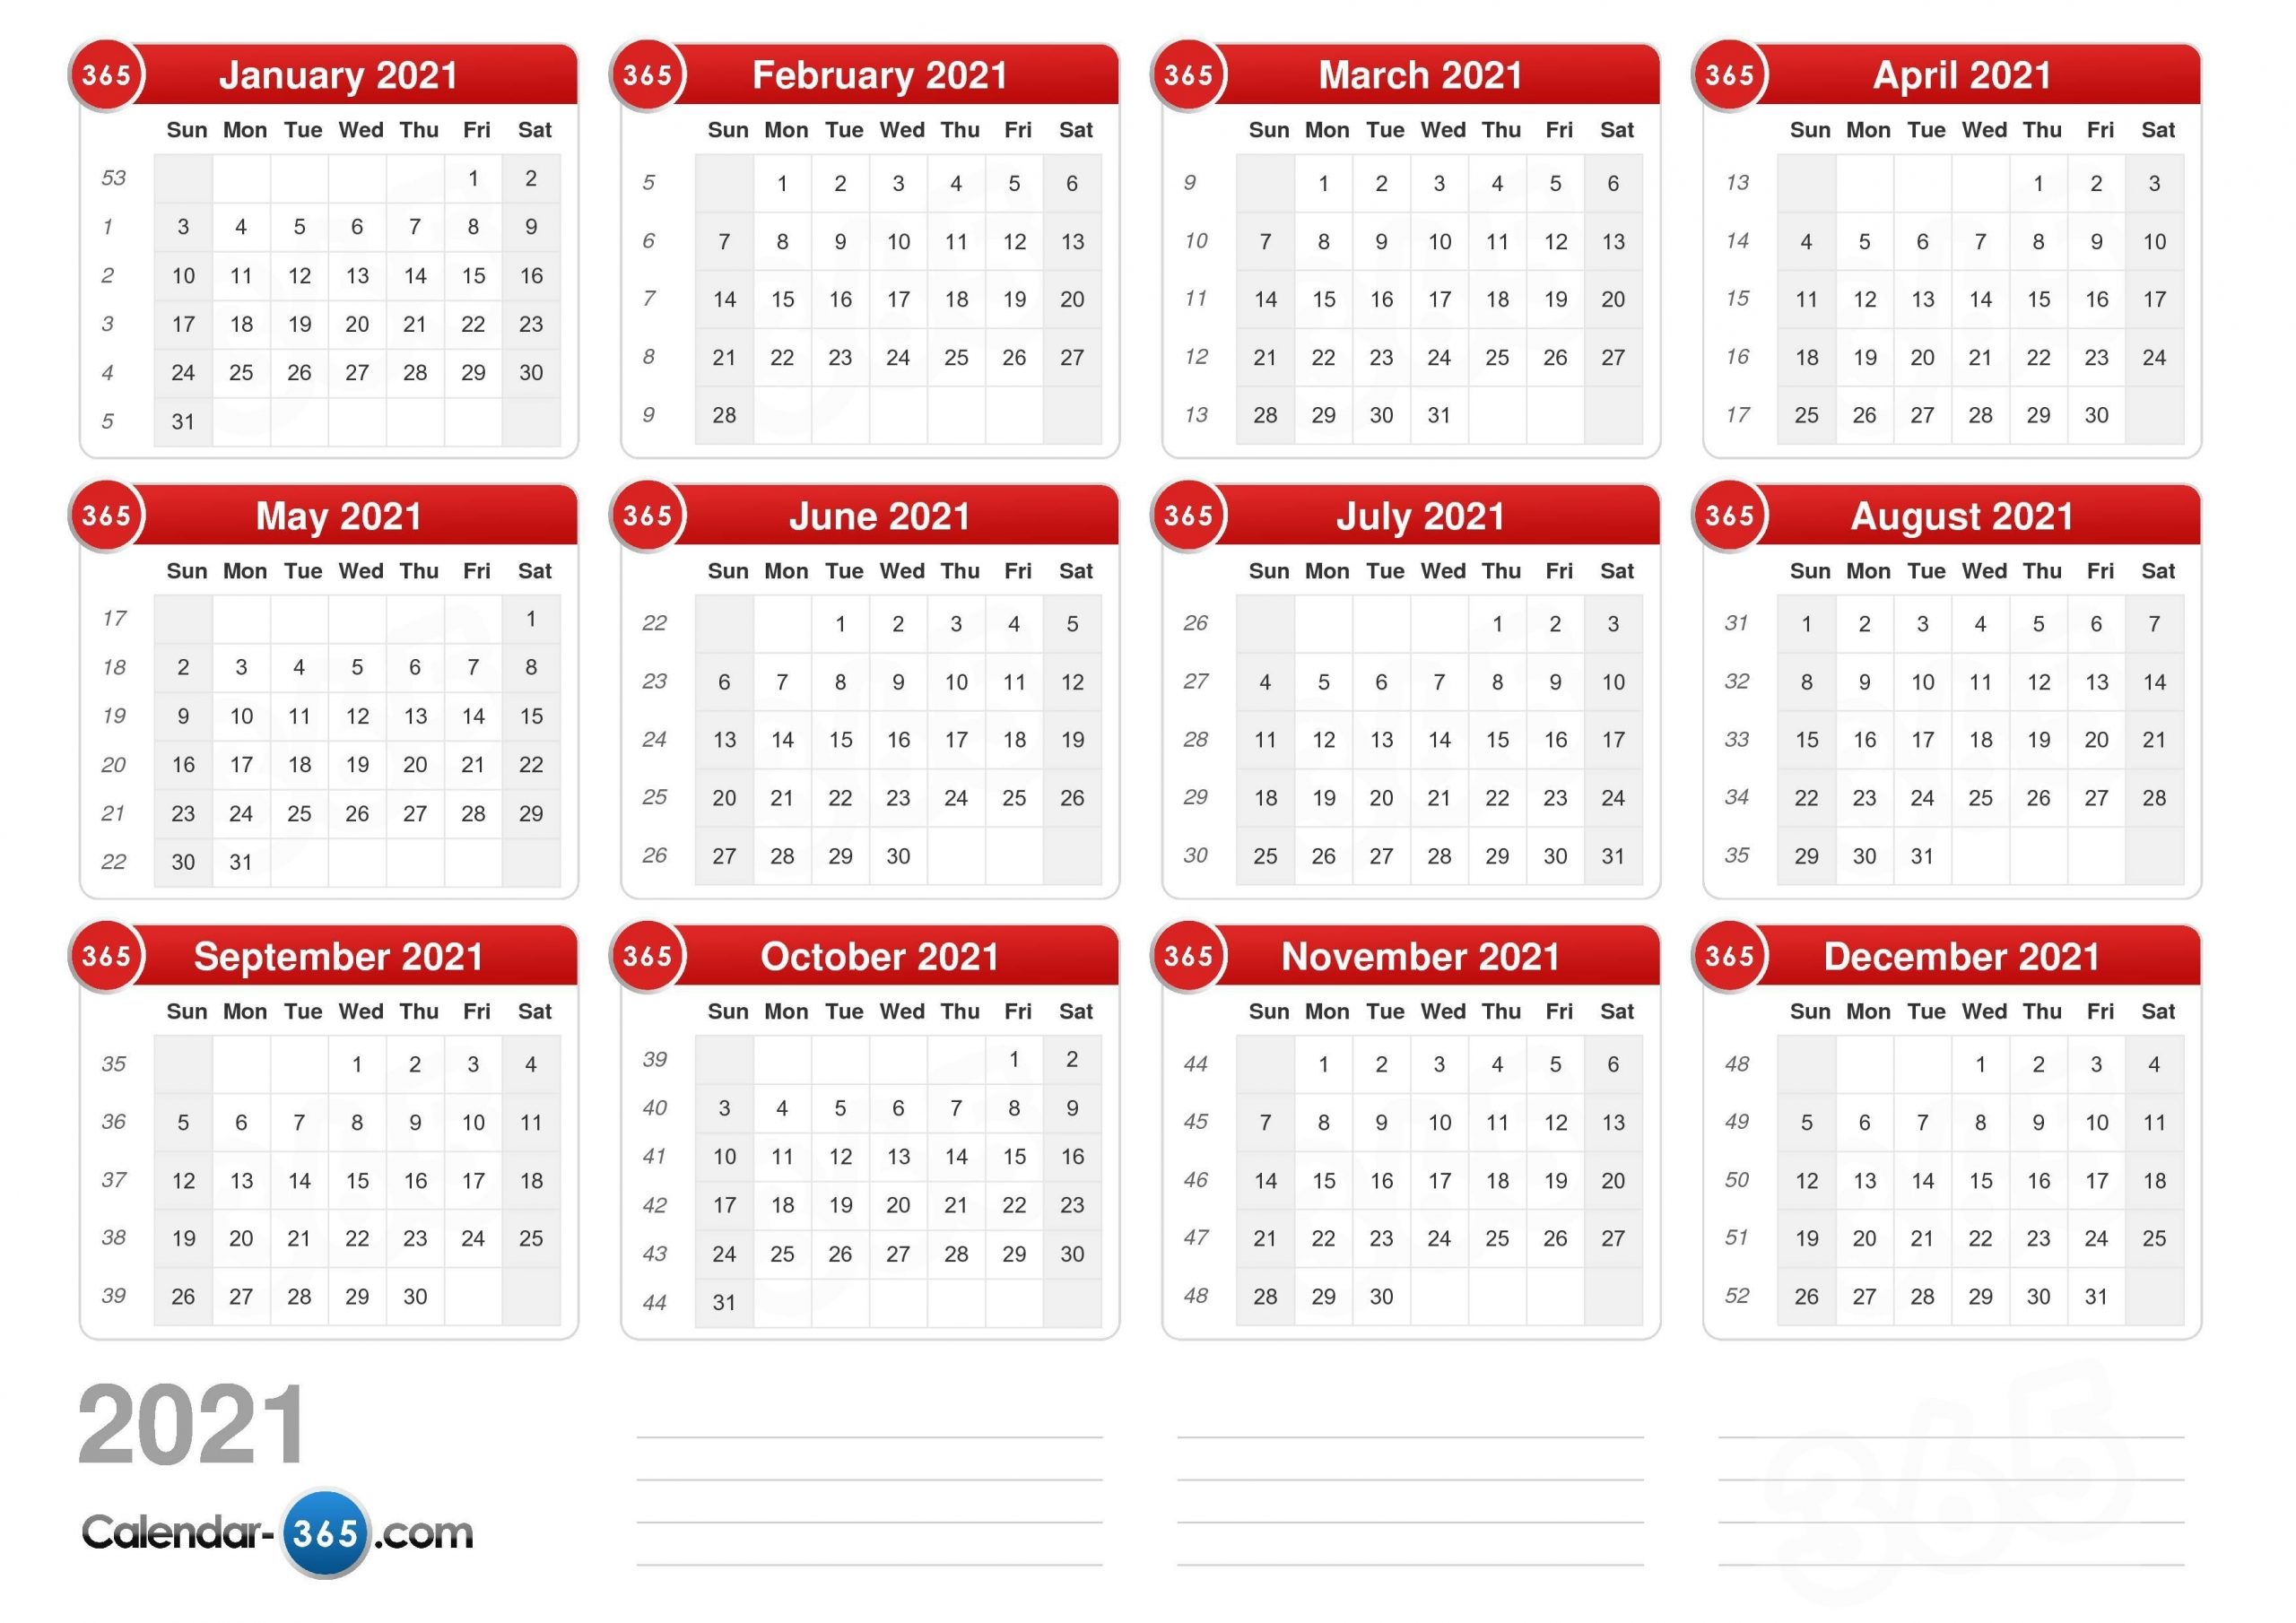 Get Julian Week Calendar 2021